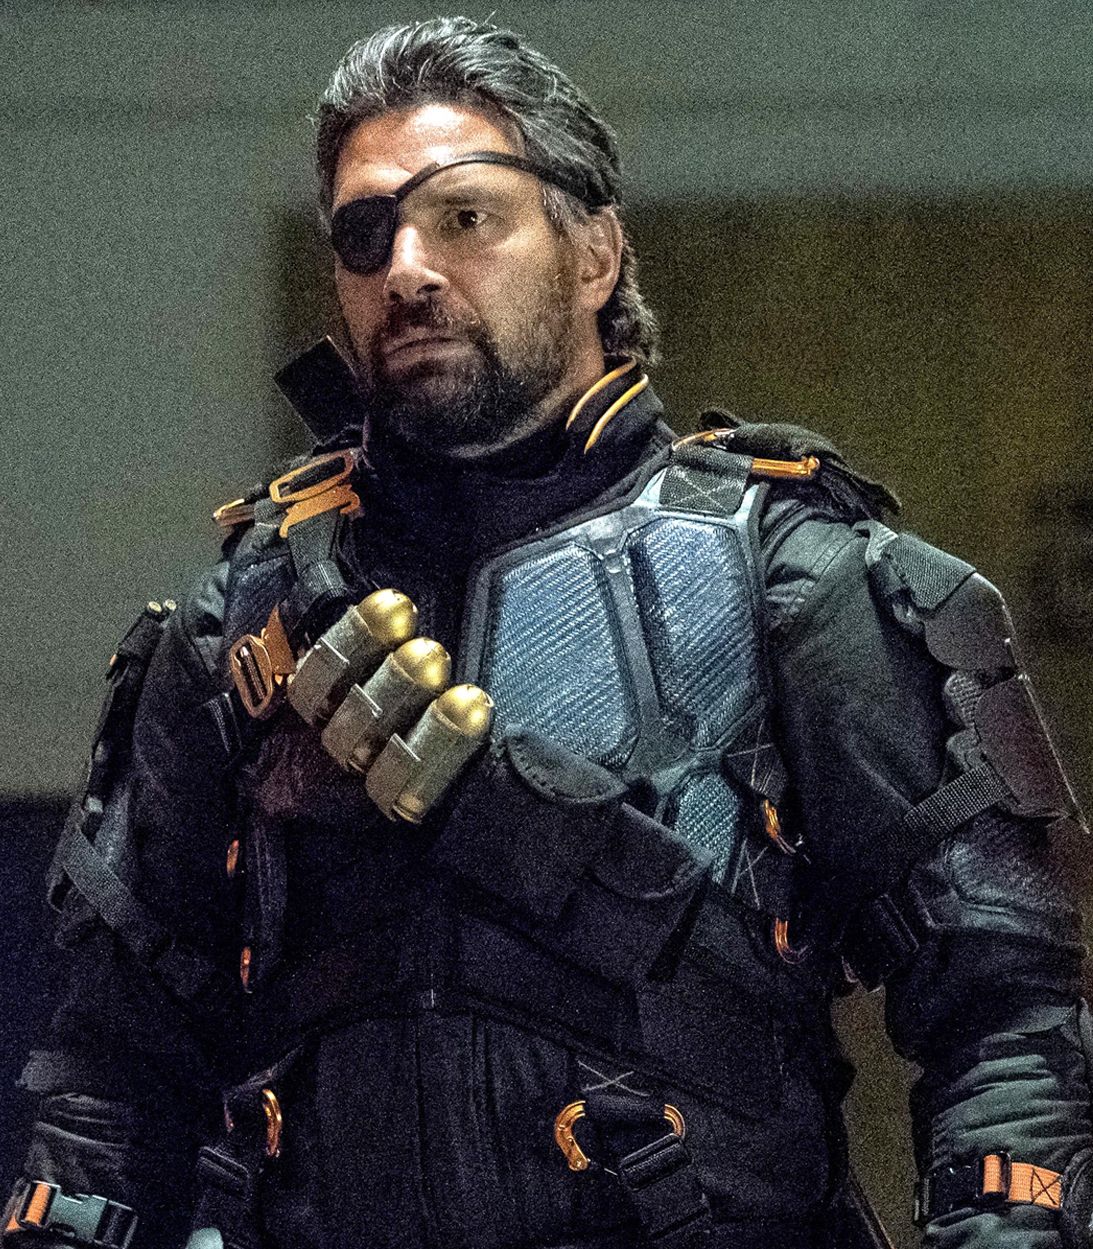 Manu Bennett as Deathstroke in Arrow